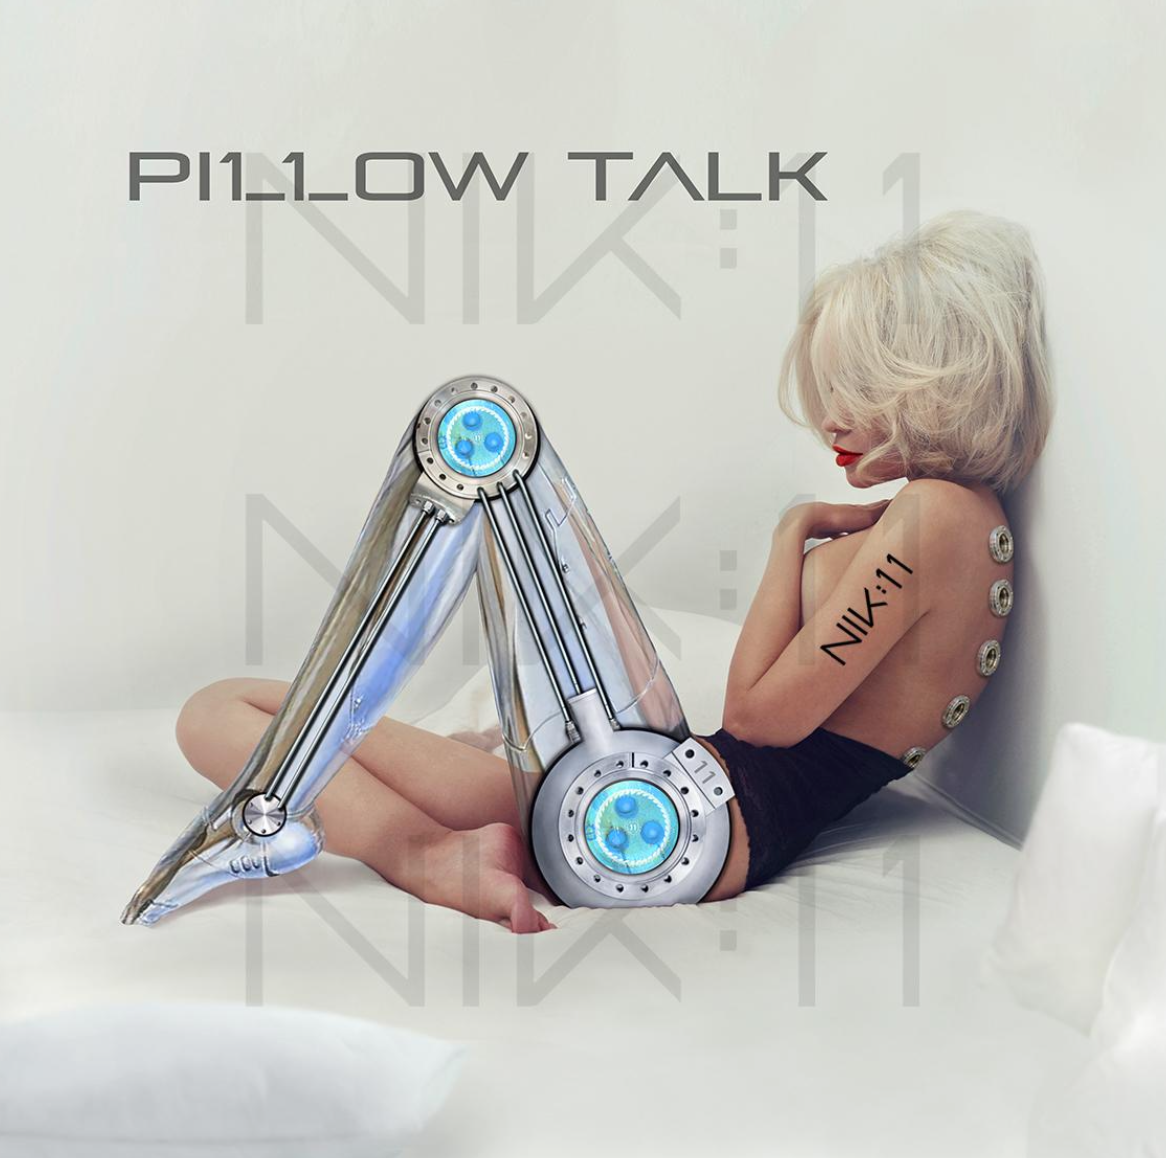 NIK:11 Releases Mesmerizing Classic Rave Single “Pillow Talk”